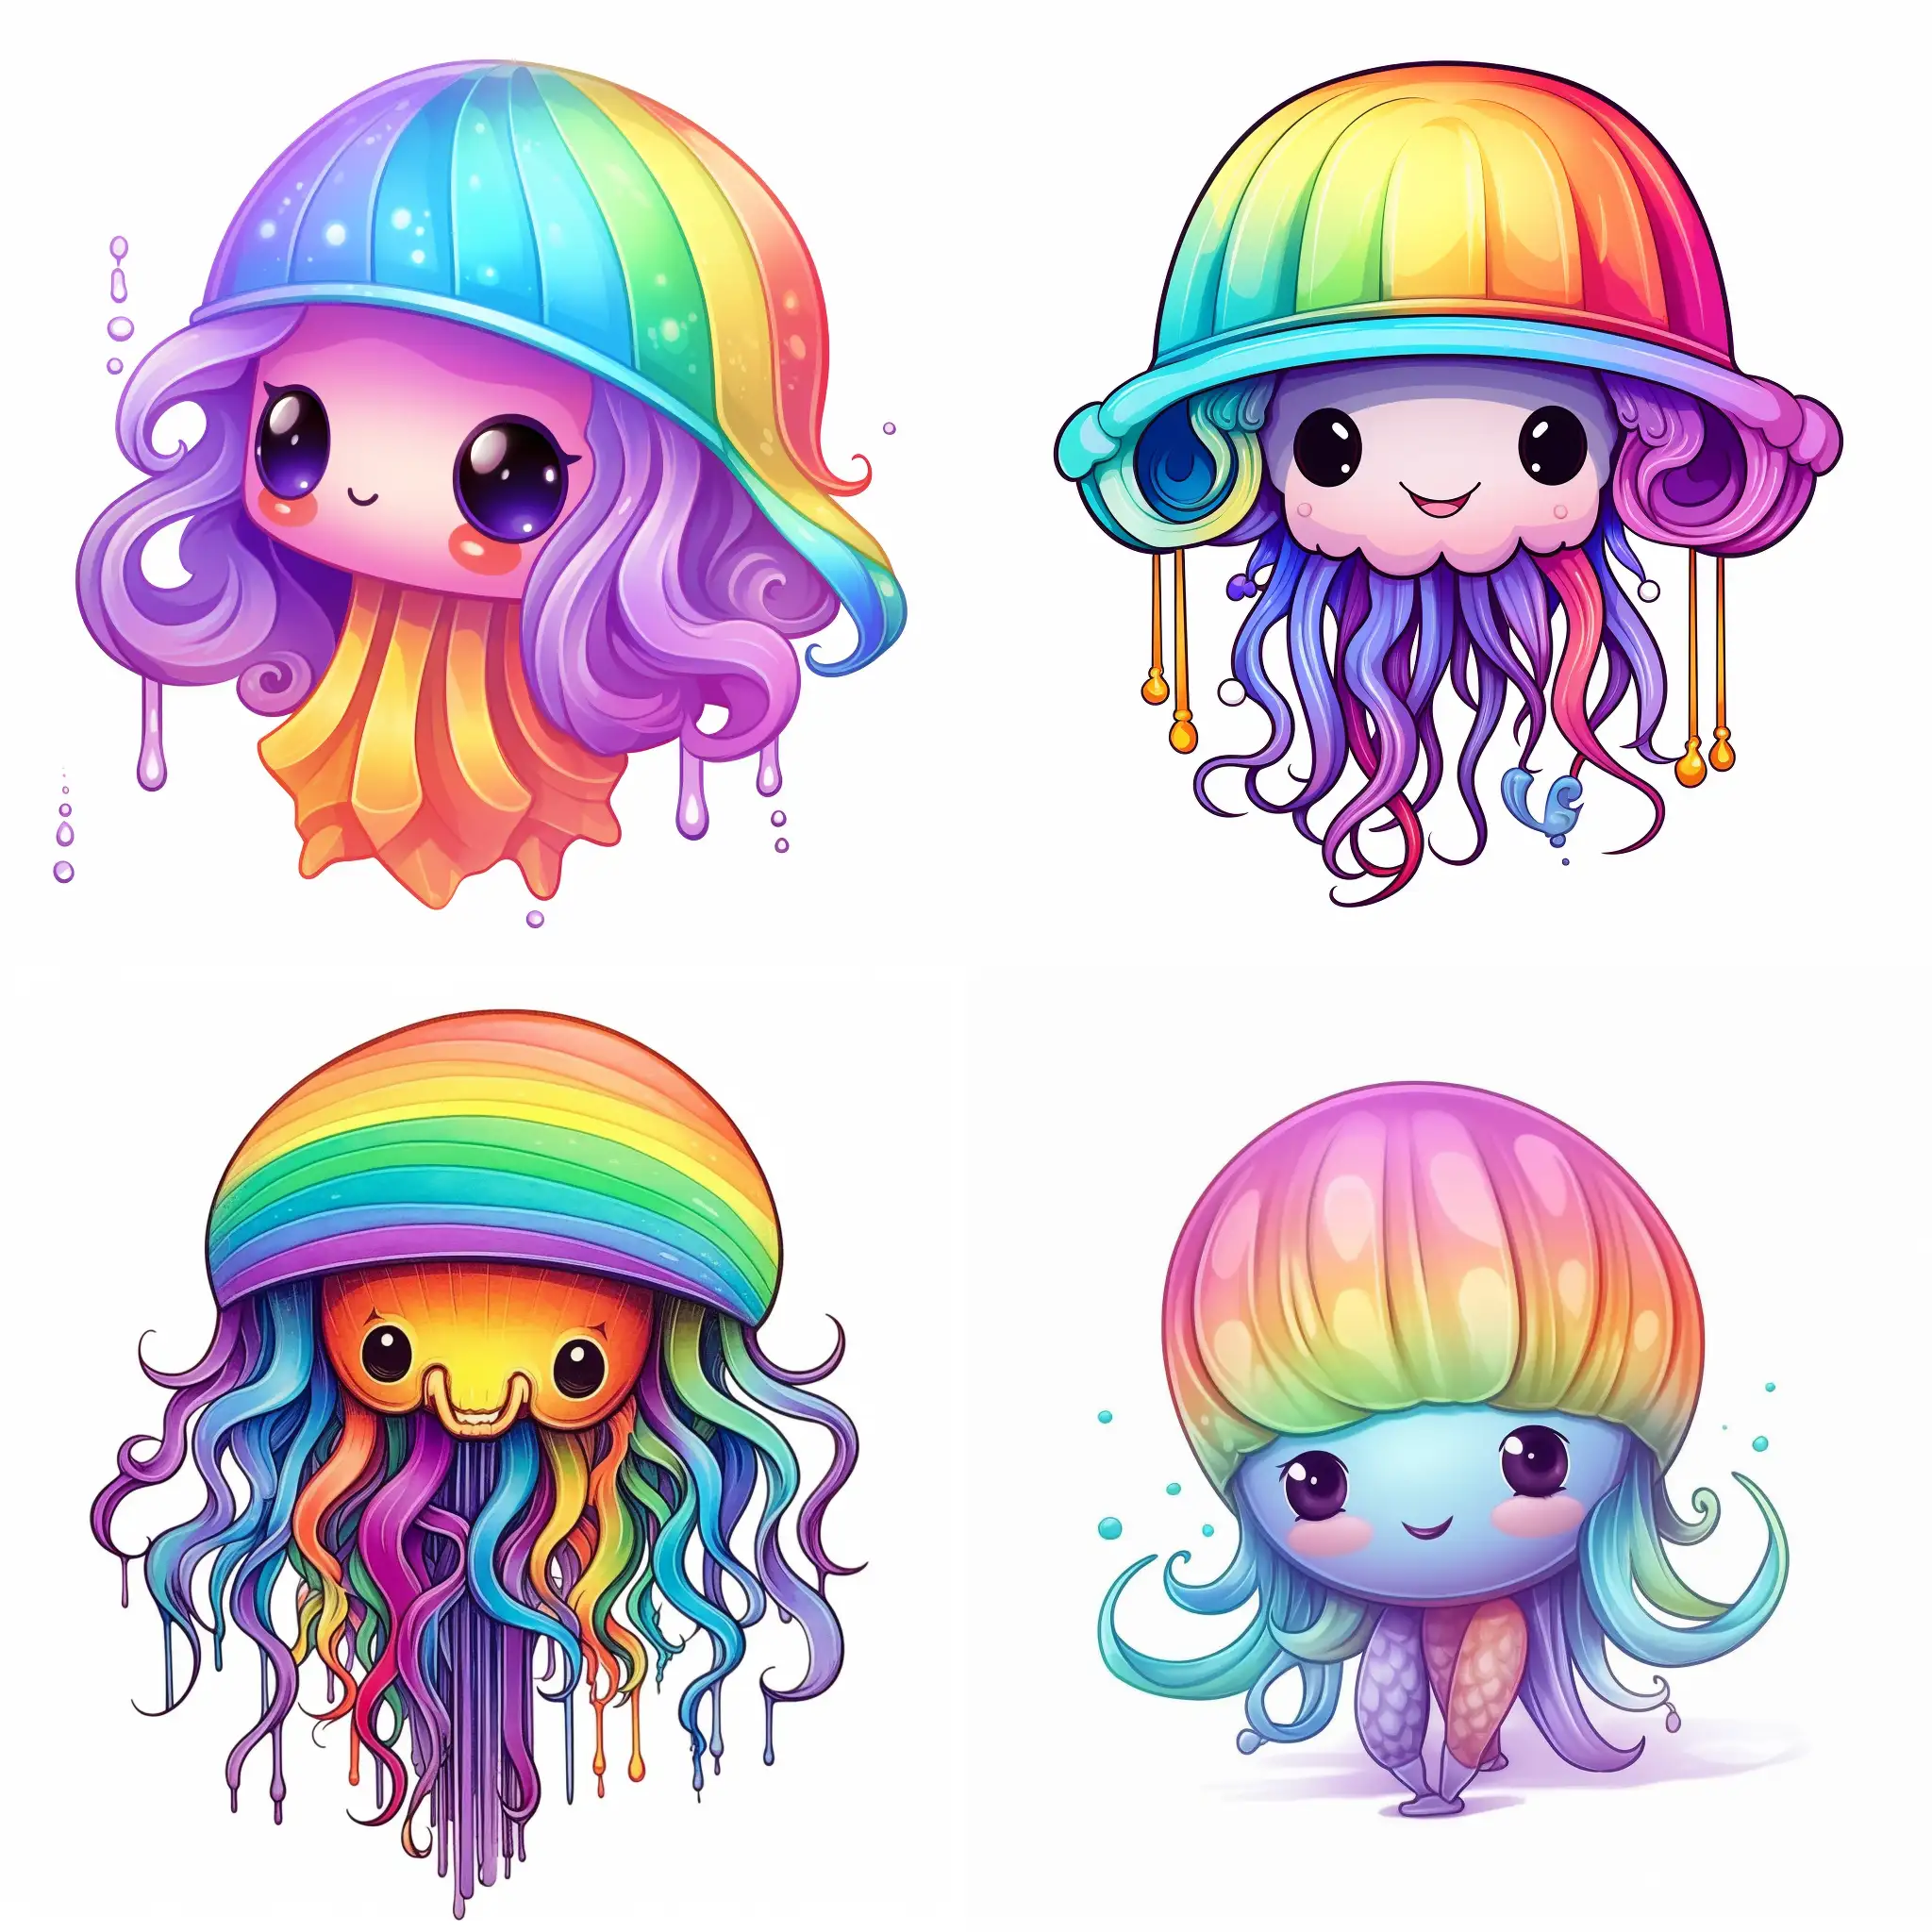 Dessine moi une sorte de poulpe meduse, kawaii, avec des contours simples, elle a des dreadlocks dans un bonnet il y a des couleurs arc-en-ciel